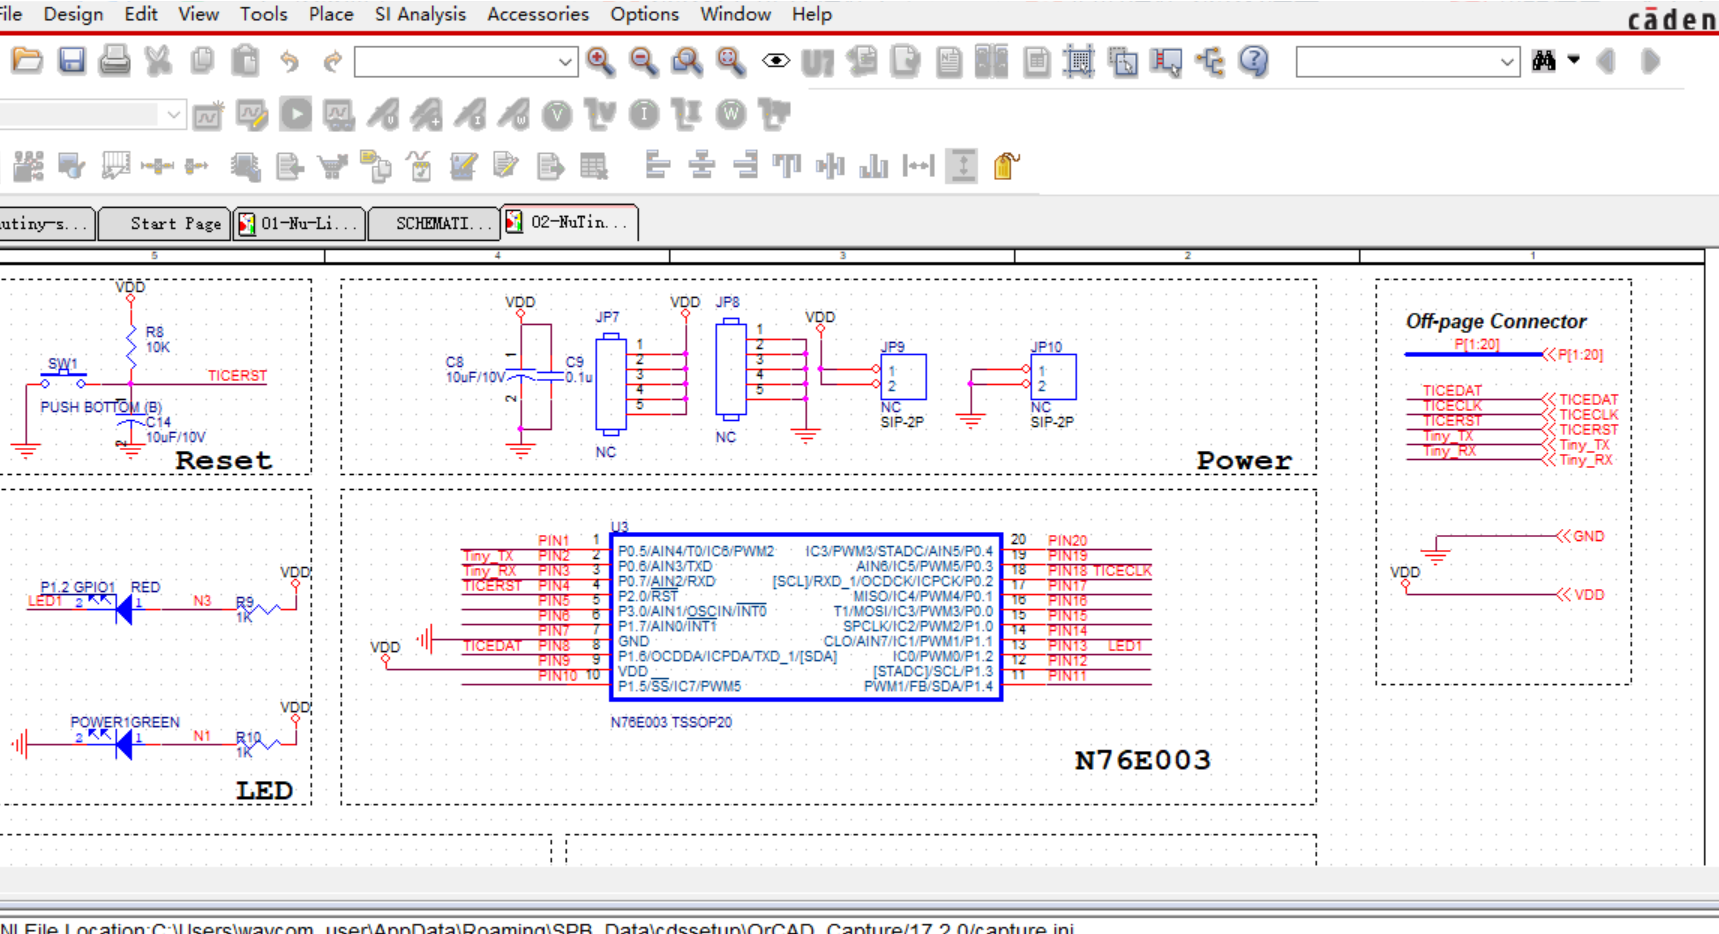 新唐N76E003官方评估板Cadence allegro设计硬件原理图+PCB文件: NuTiny